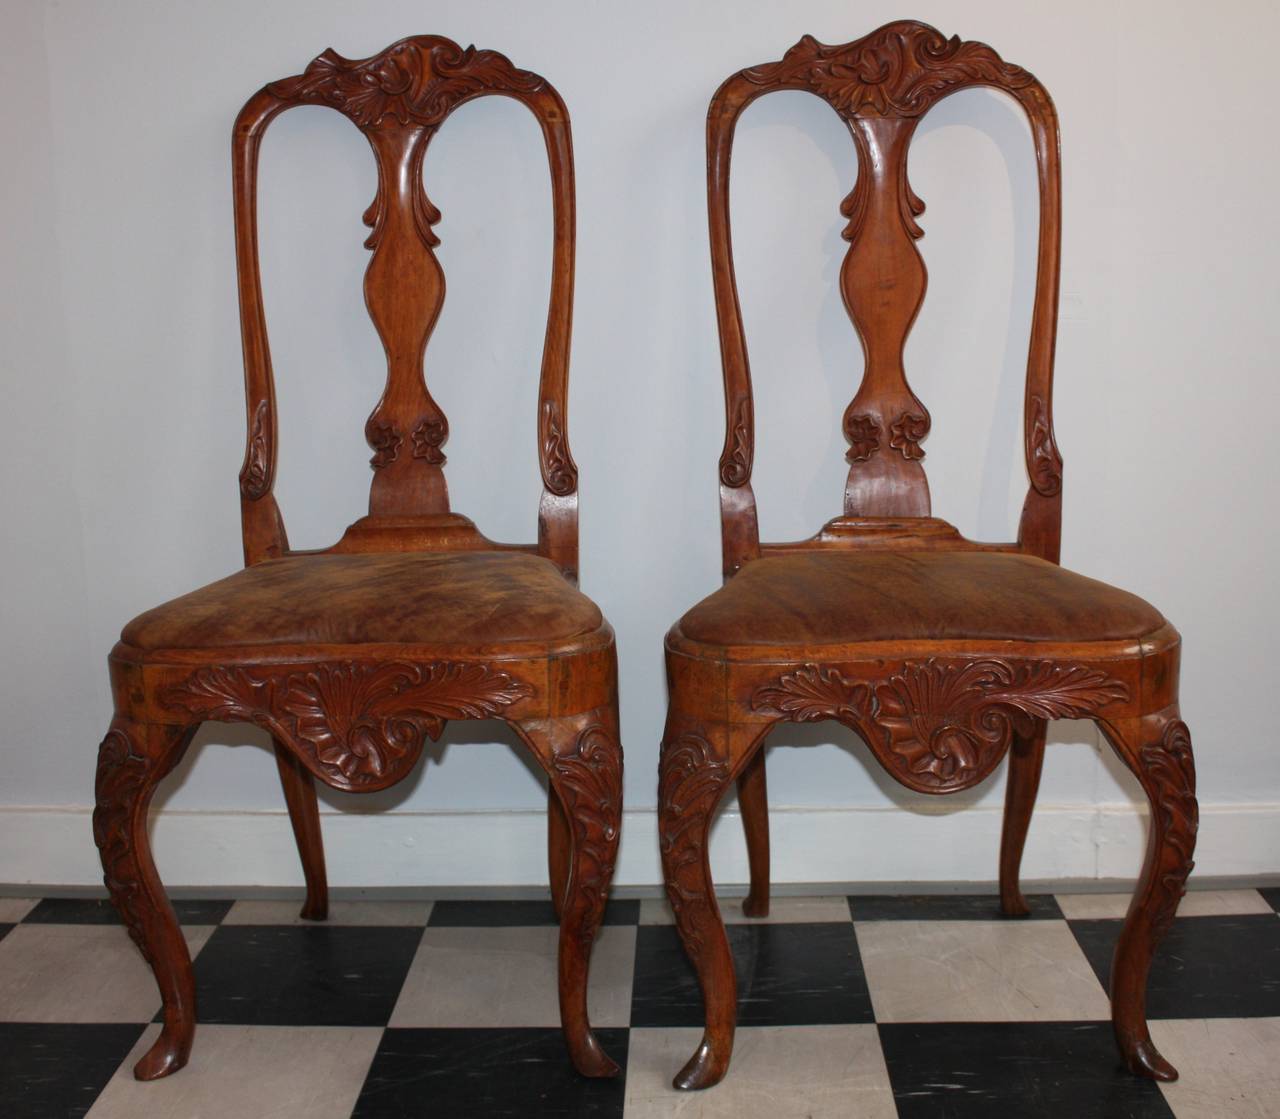 Sehr schönes Paar Rokoko-Stühle, neu gepolstert in Leder mit einem Vintage-Look. Könnte zusammen mit einem anderen Paar Rokoko-Stühle in der gleichen Farbe Holz und Leder gekauft werden, nur ein wenig anders in der Schnitzerei. Werden auf dieser